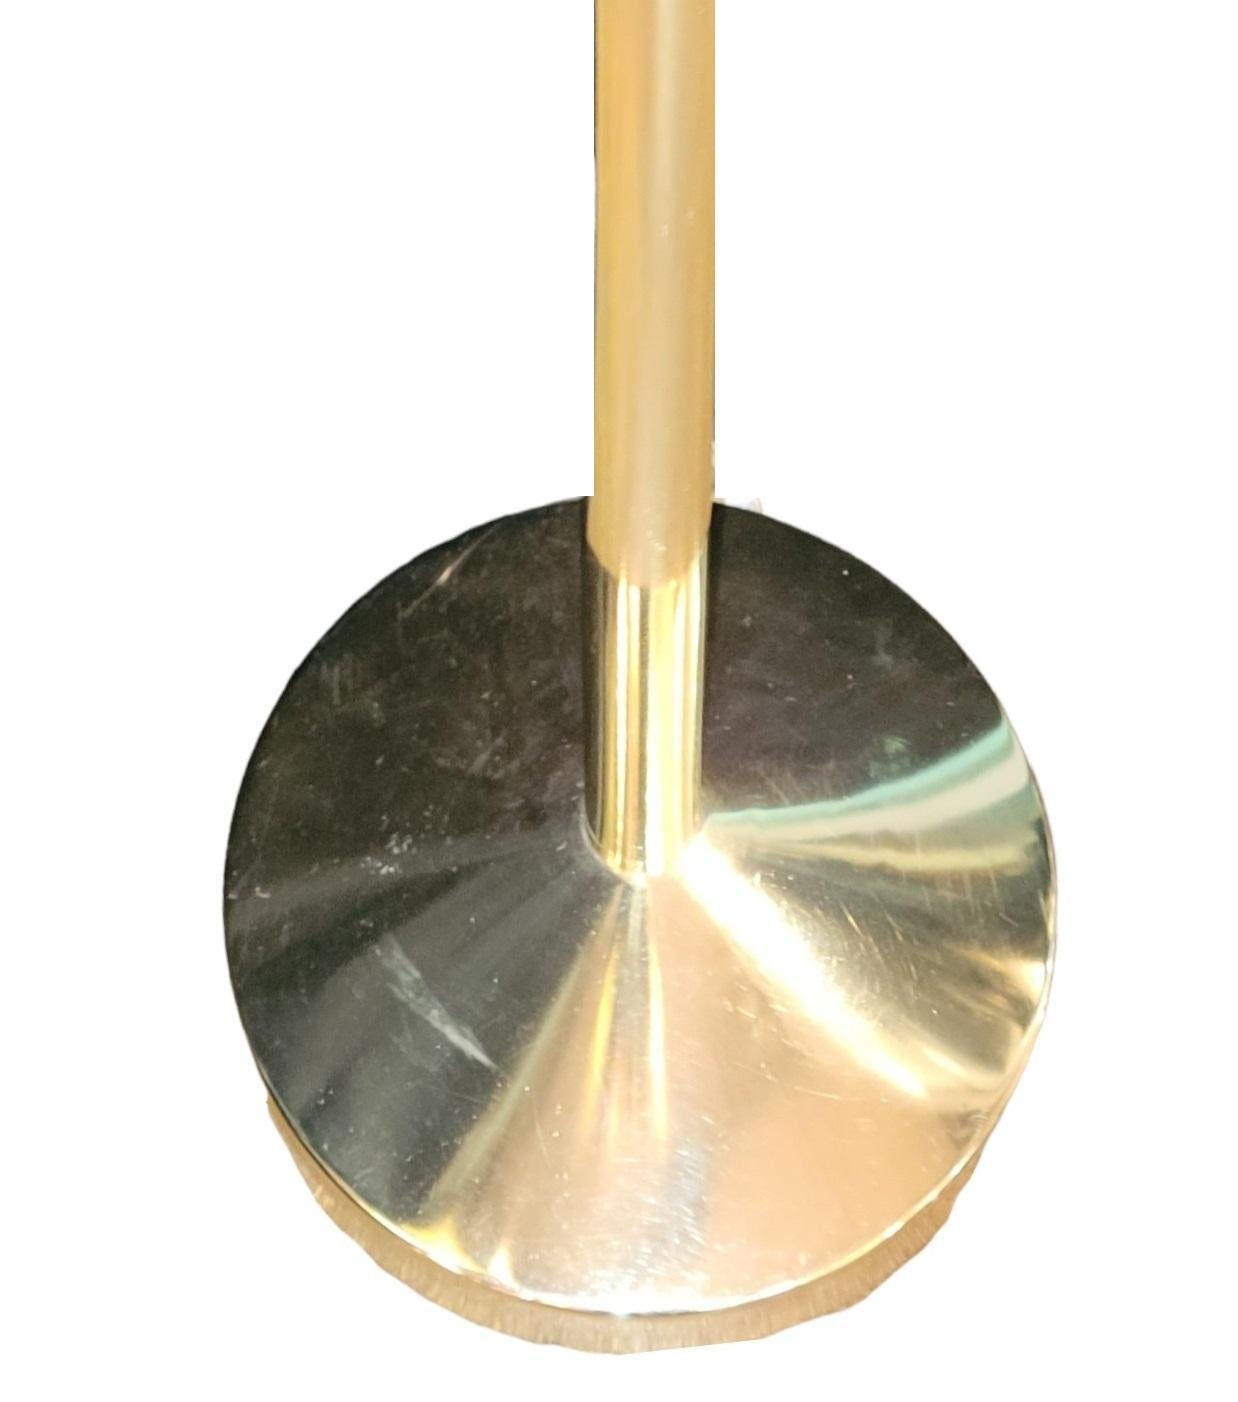 Lampadaire italien en bronze avec anneaux en verre sur le col de la lampe. La base est lourde et présente des traces d'usure dues à l'âge et à l'utilisation.

Dimensions approximatives 72,5 x 13

L'abat-jour fait partie du lampadaire.